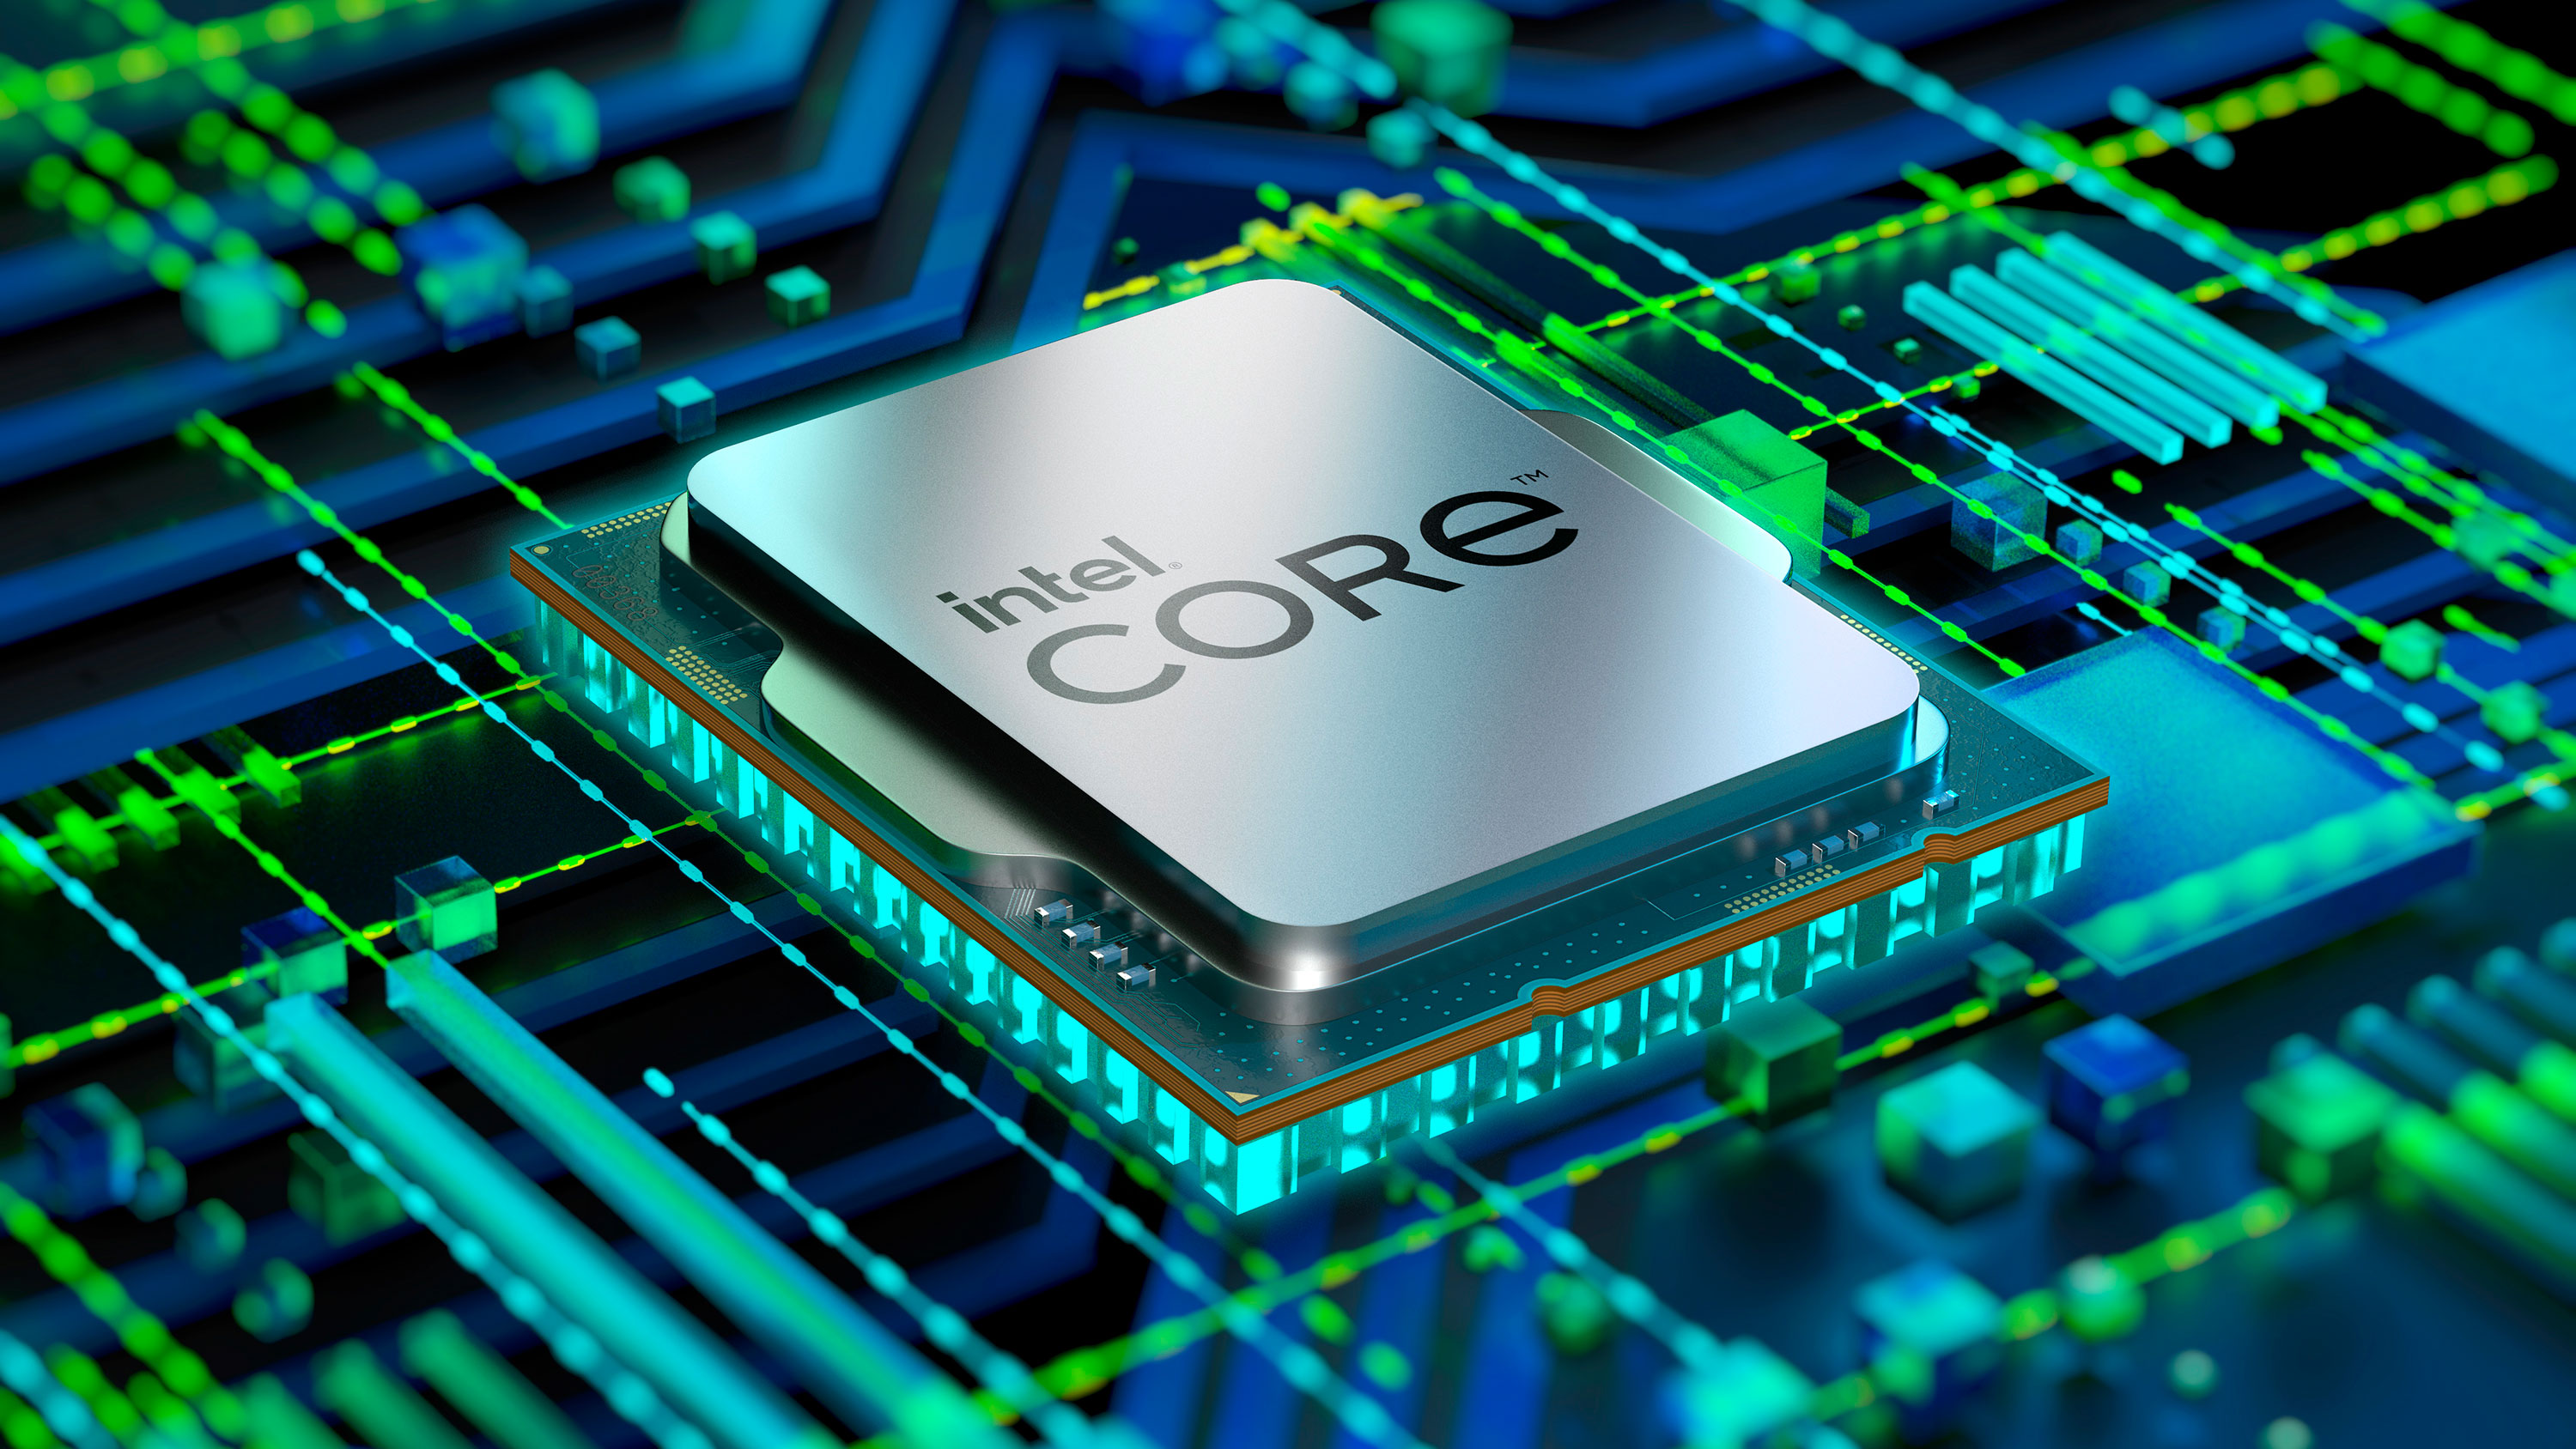 Procesor Intel Core i3-12100 je speciln uren pro zkladn desky s patic LGA1700 z ady Intel 600 Series, kdy se pyn 4 jdry s maximlnm taktem a 4,3 GHz diky TB 2.0 technologii.